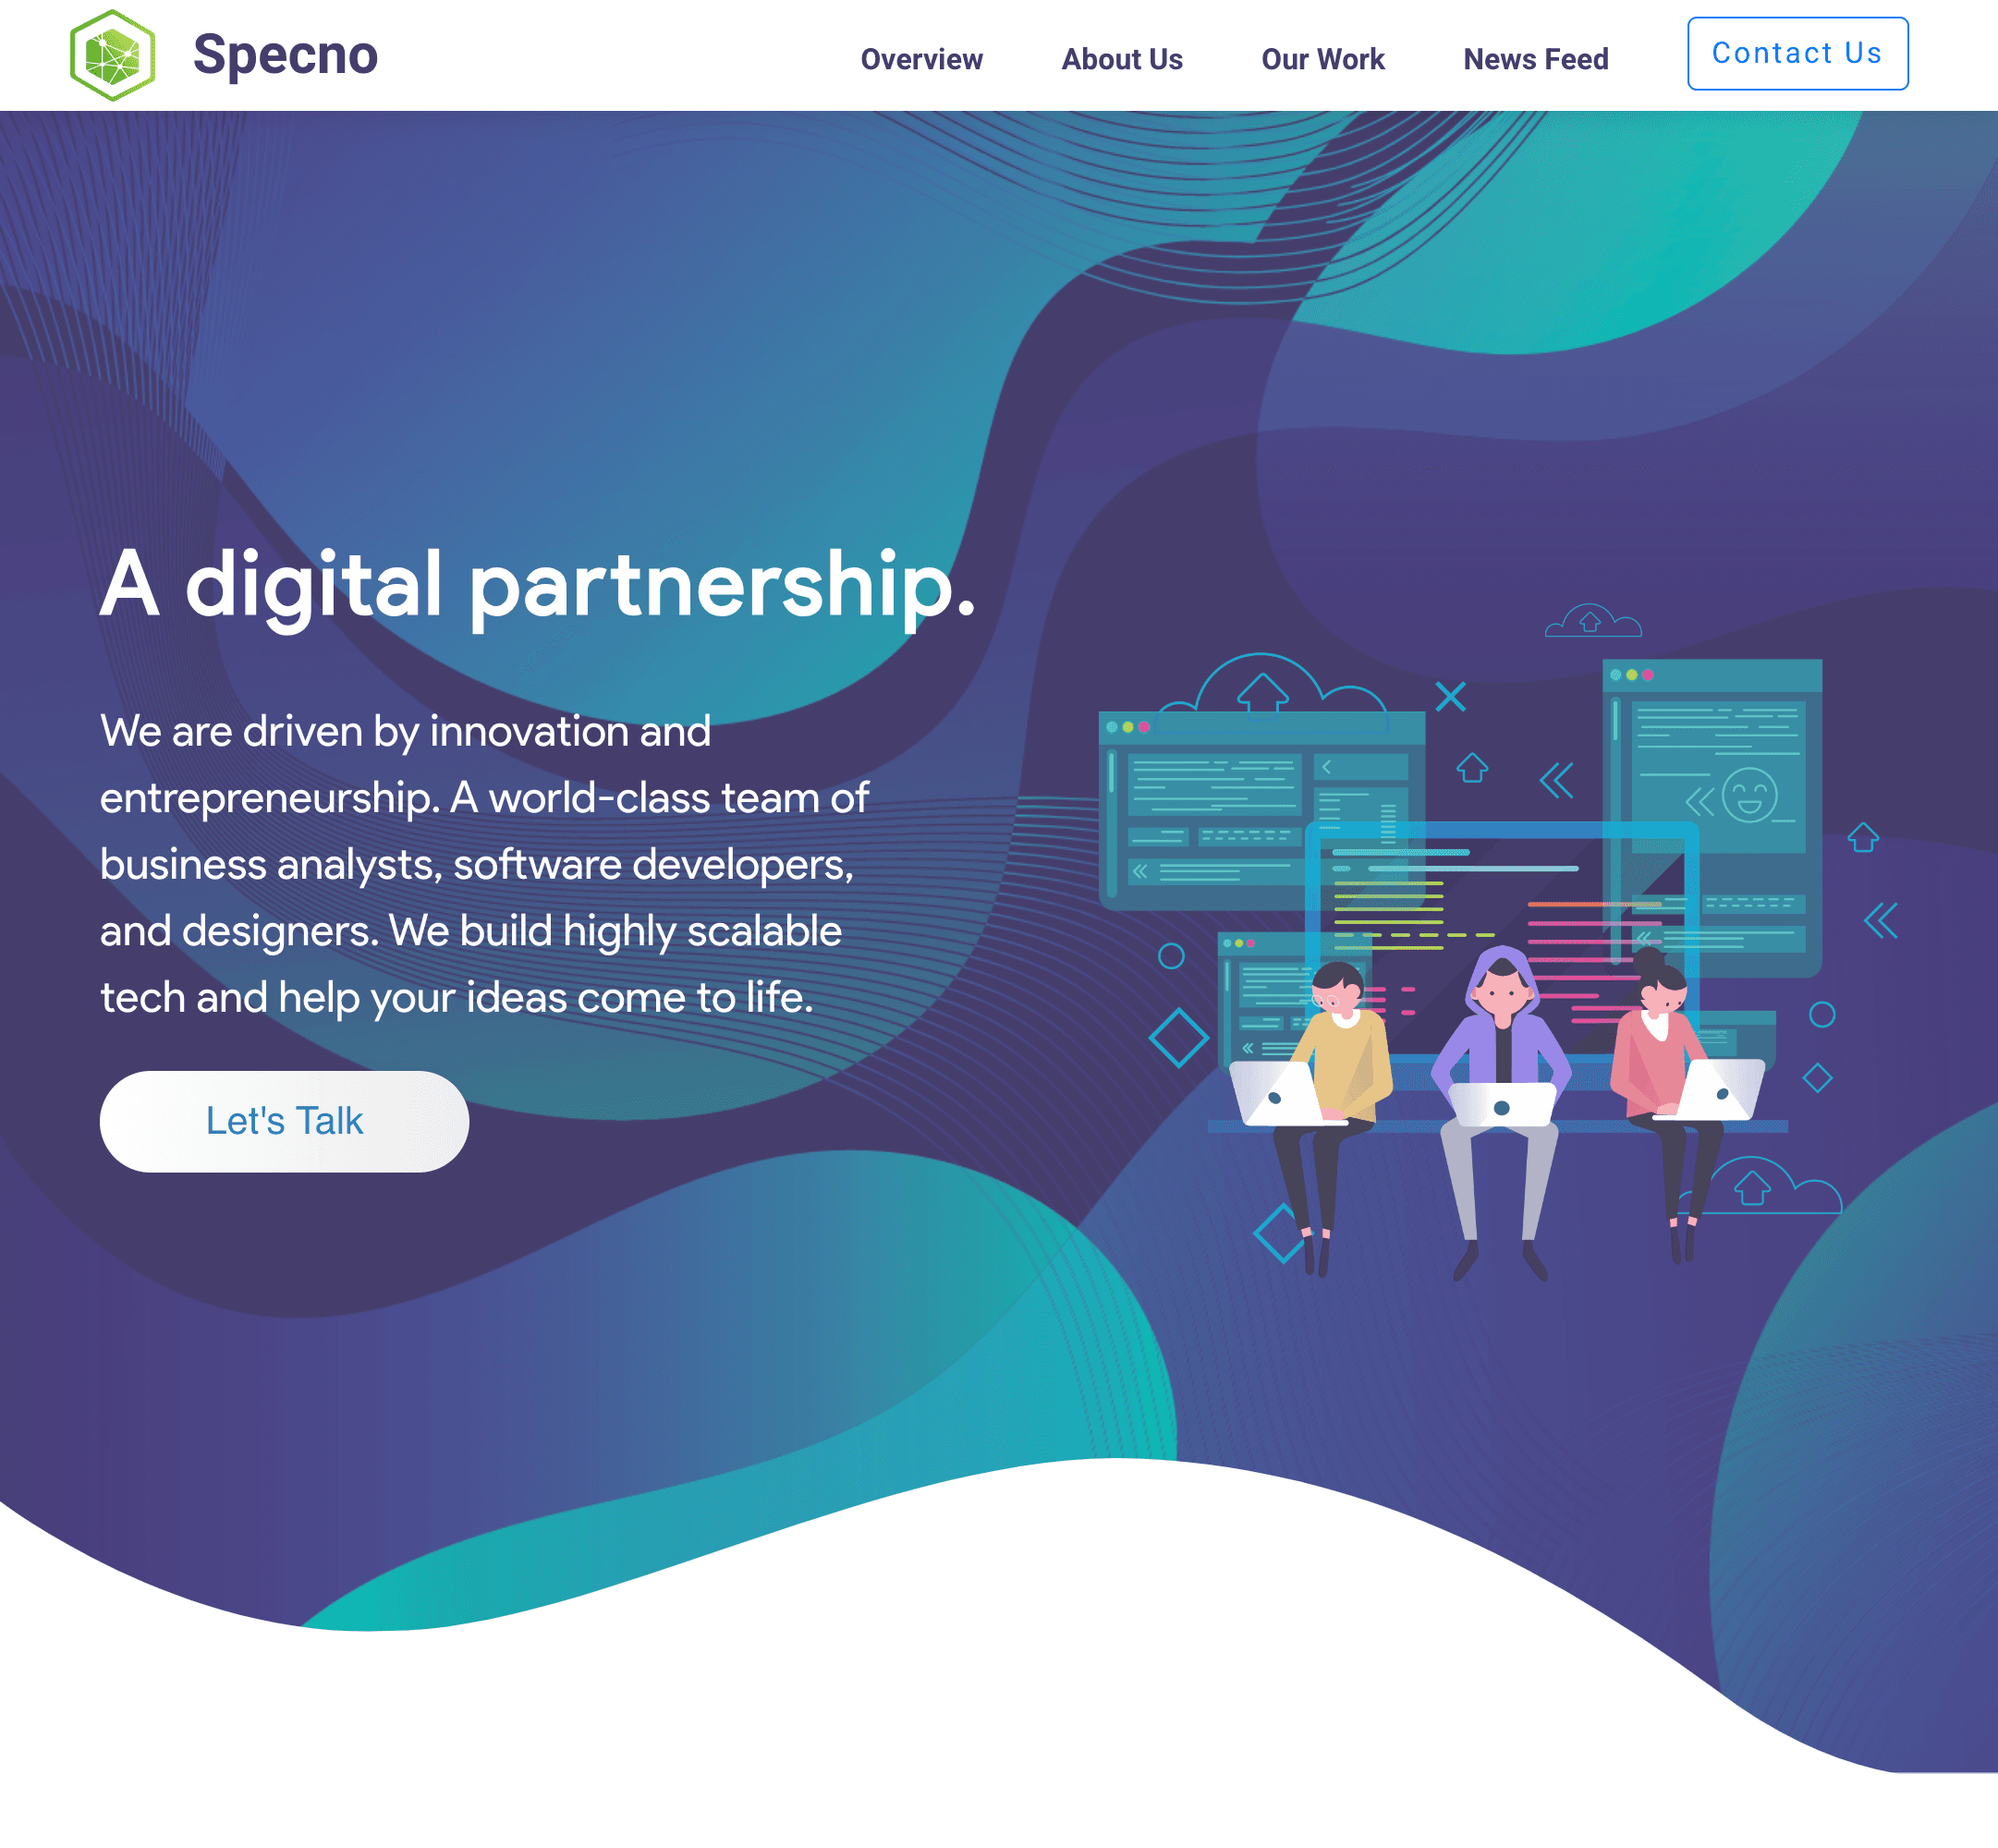 Specno.com website cover image